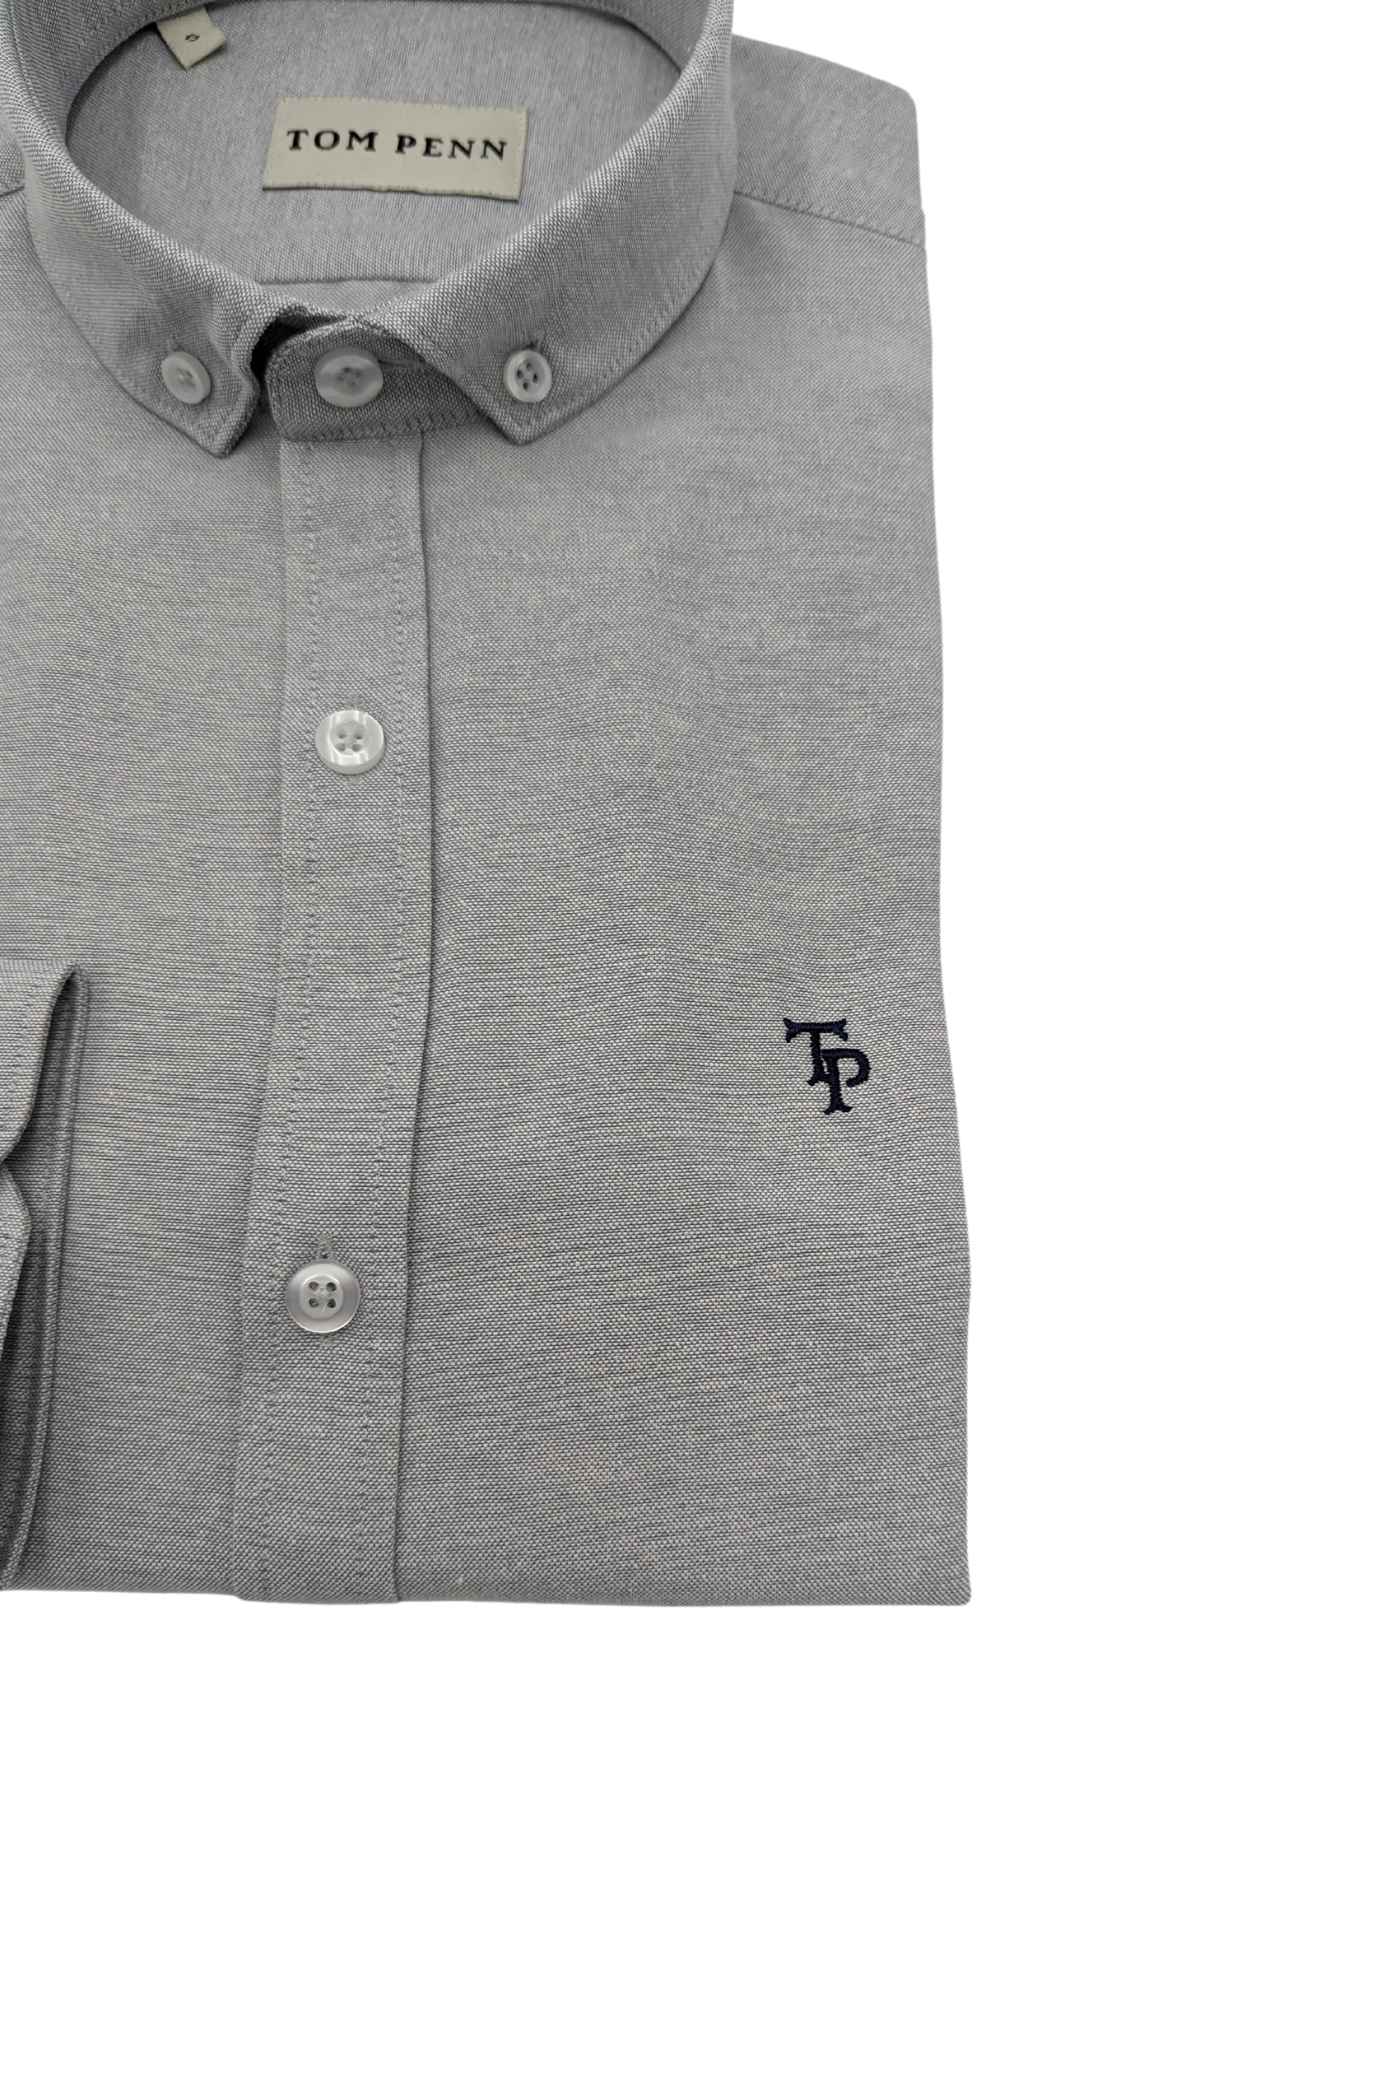 Tom Penn Slim fit Button Down Silver Shirt-Detail view